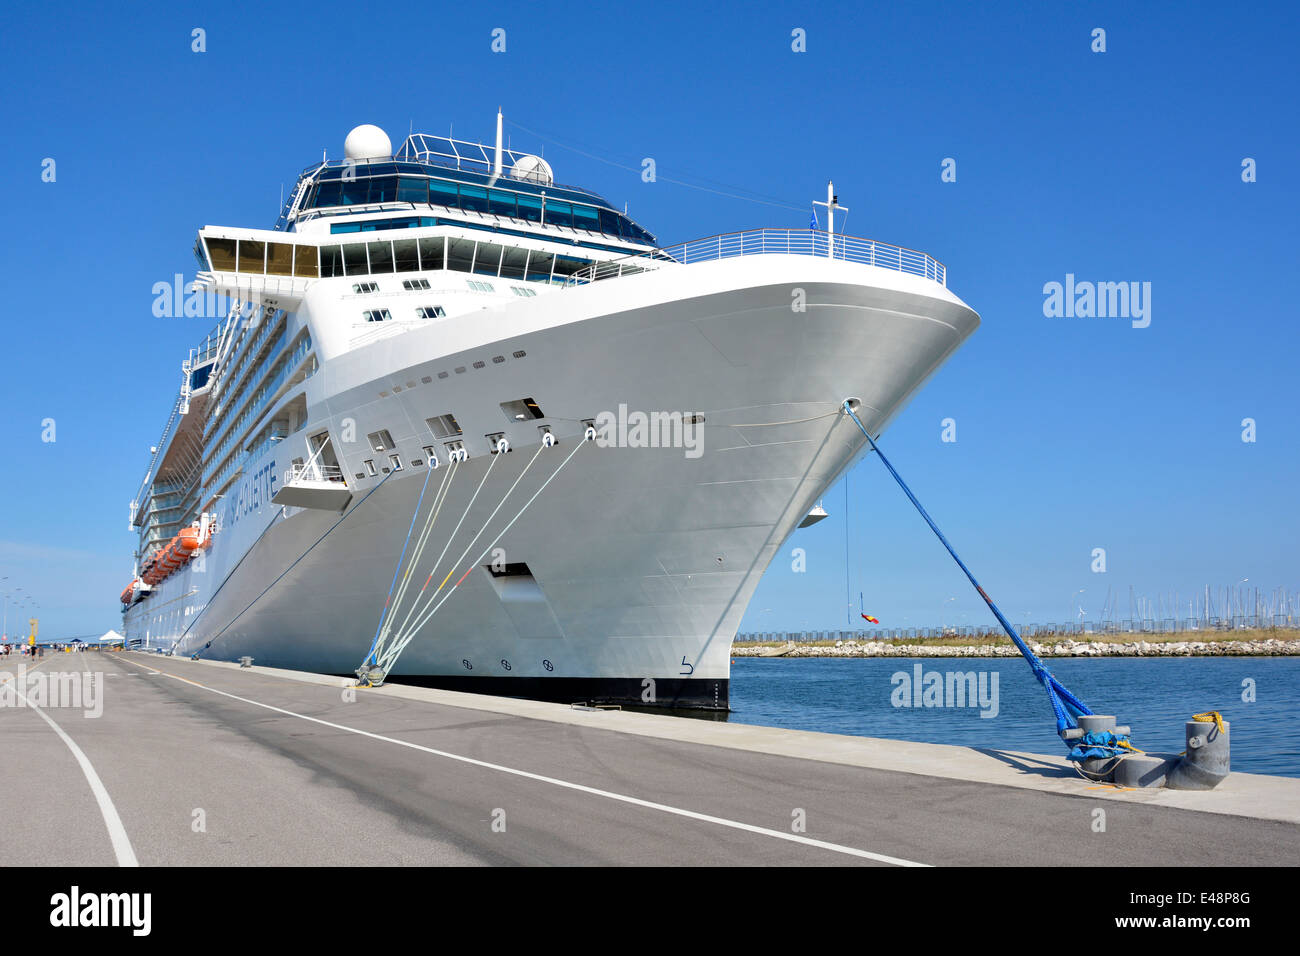 Festmachen der Taue Bogen von Celebrity Cruises "Silhouette" Liner Hafen Corsini am Kreuzfahrtterminal von Ravenna verankert zu sichern Stockfoto